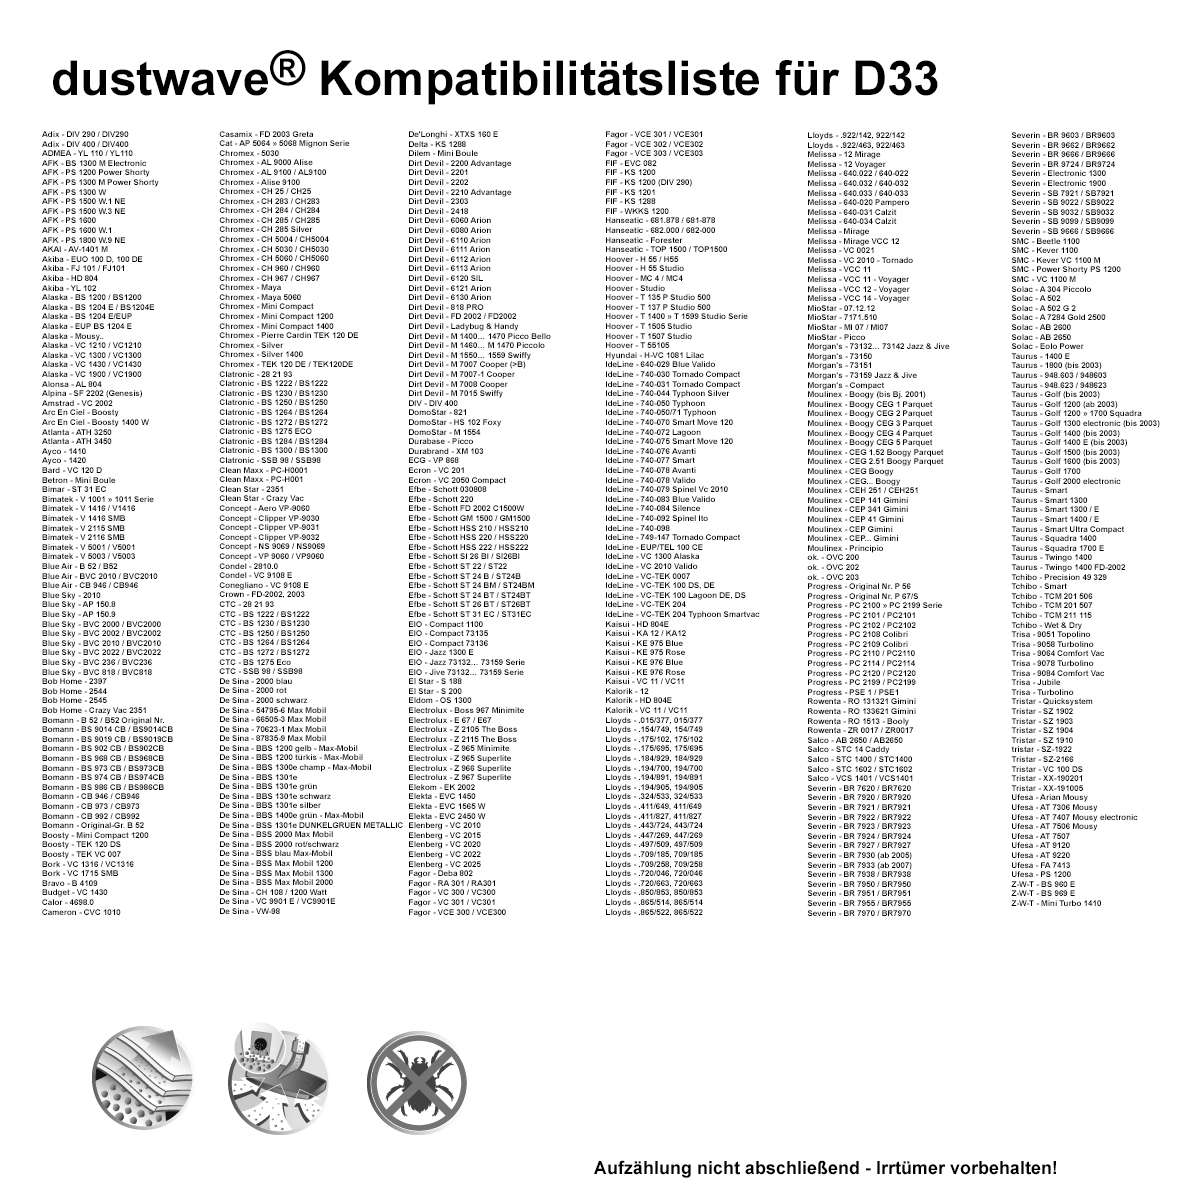 Dustwave® 10 Staubsaugerbeutel für Hoover SC150... / TRSC150 Micro Power - hocheffizient, mehrlagiges Mikrovlies mit Hygieneverschluss - Made in Germany